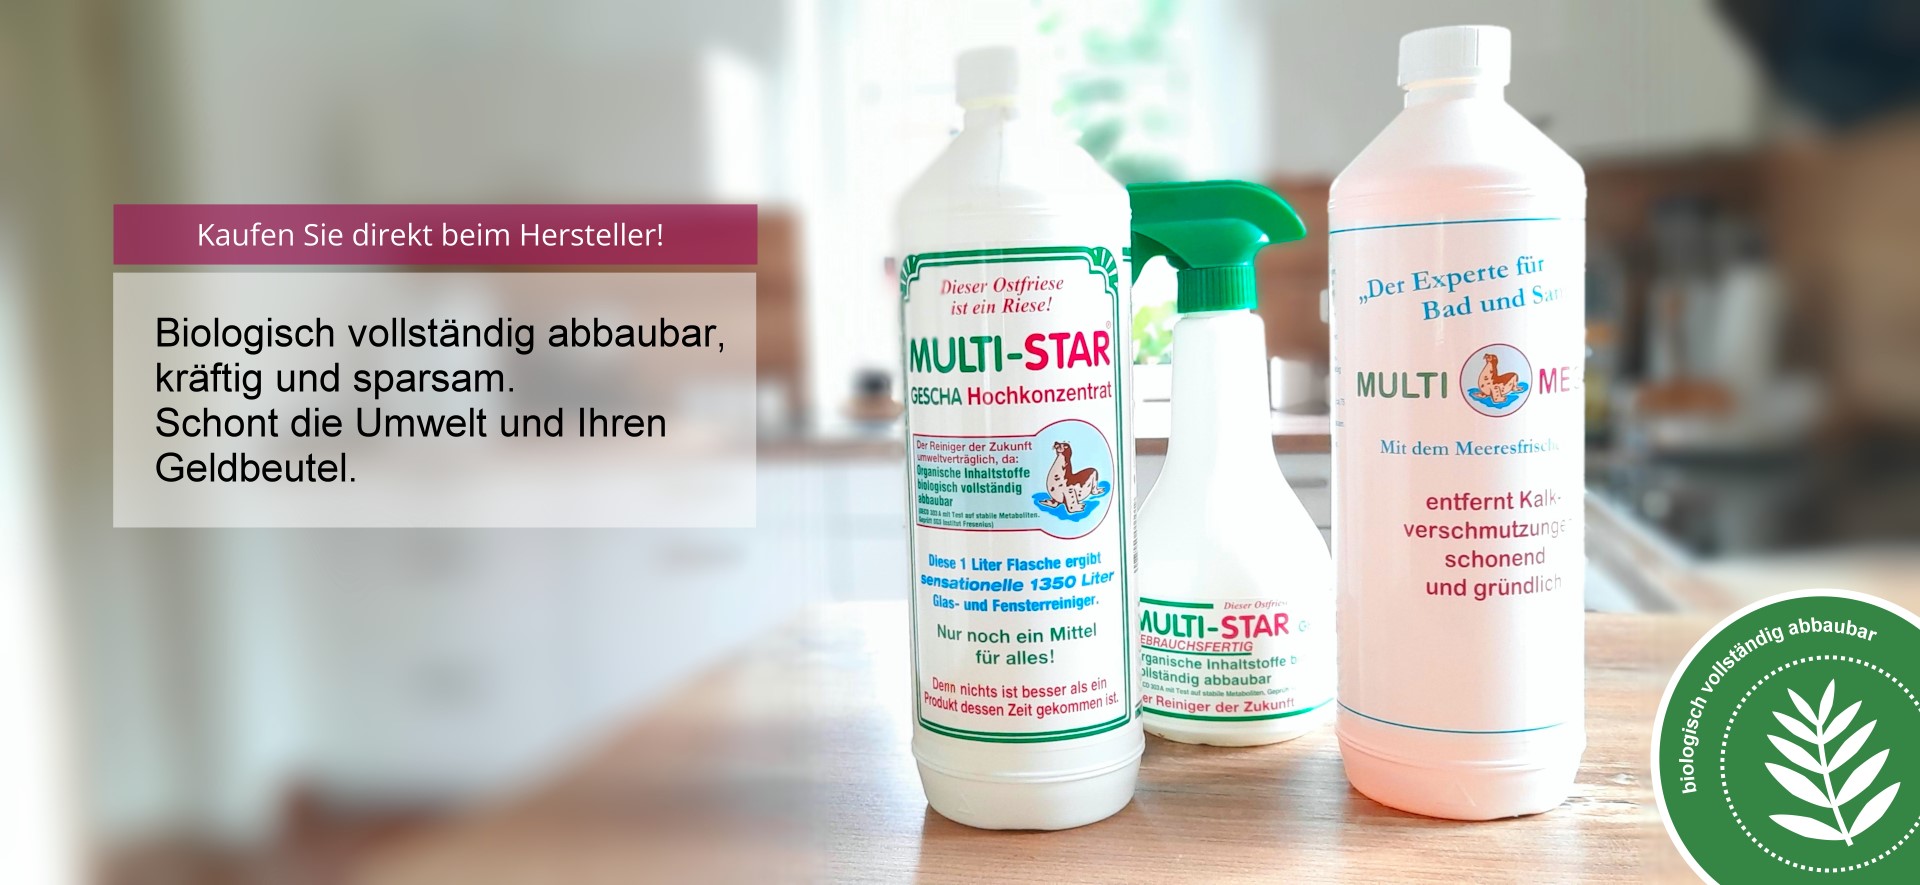 Multi-Star Reinigungsmittel - Das Original vom Hersteller